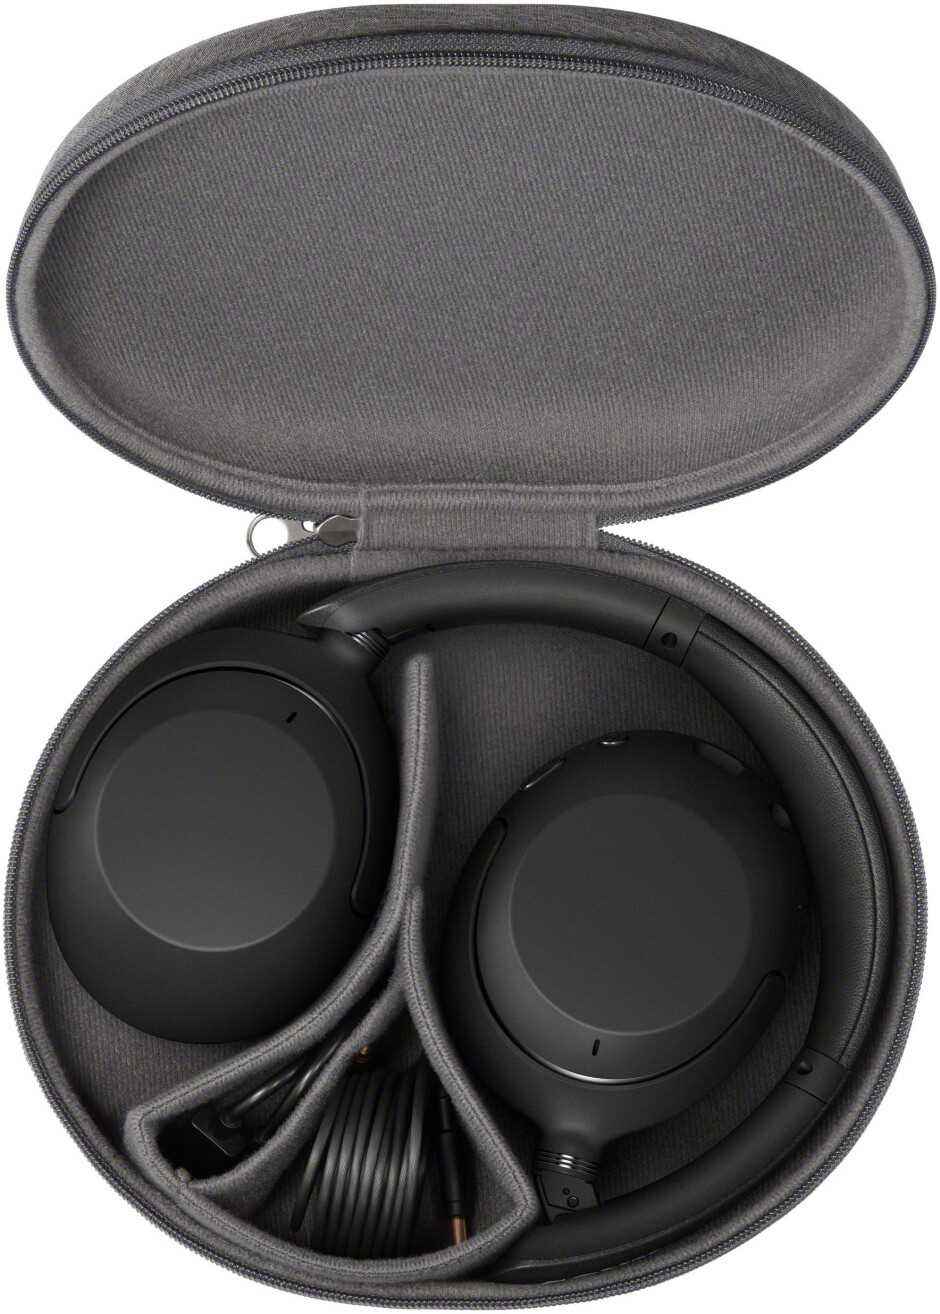 Sony'nin yeni WH-XB910N Gürültü Önleyici kulaklıkları sınırlı bir süre için 100 $ indirimde